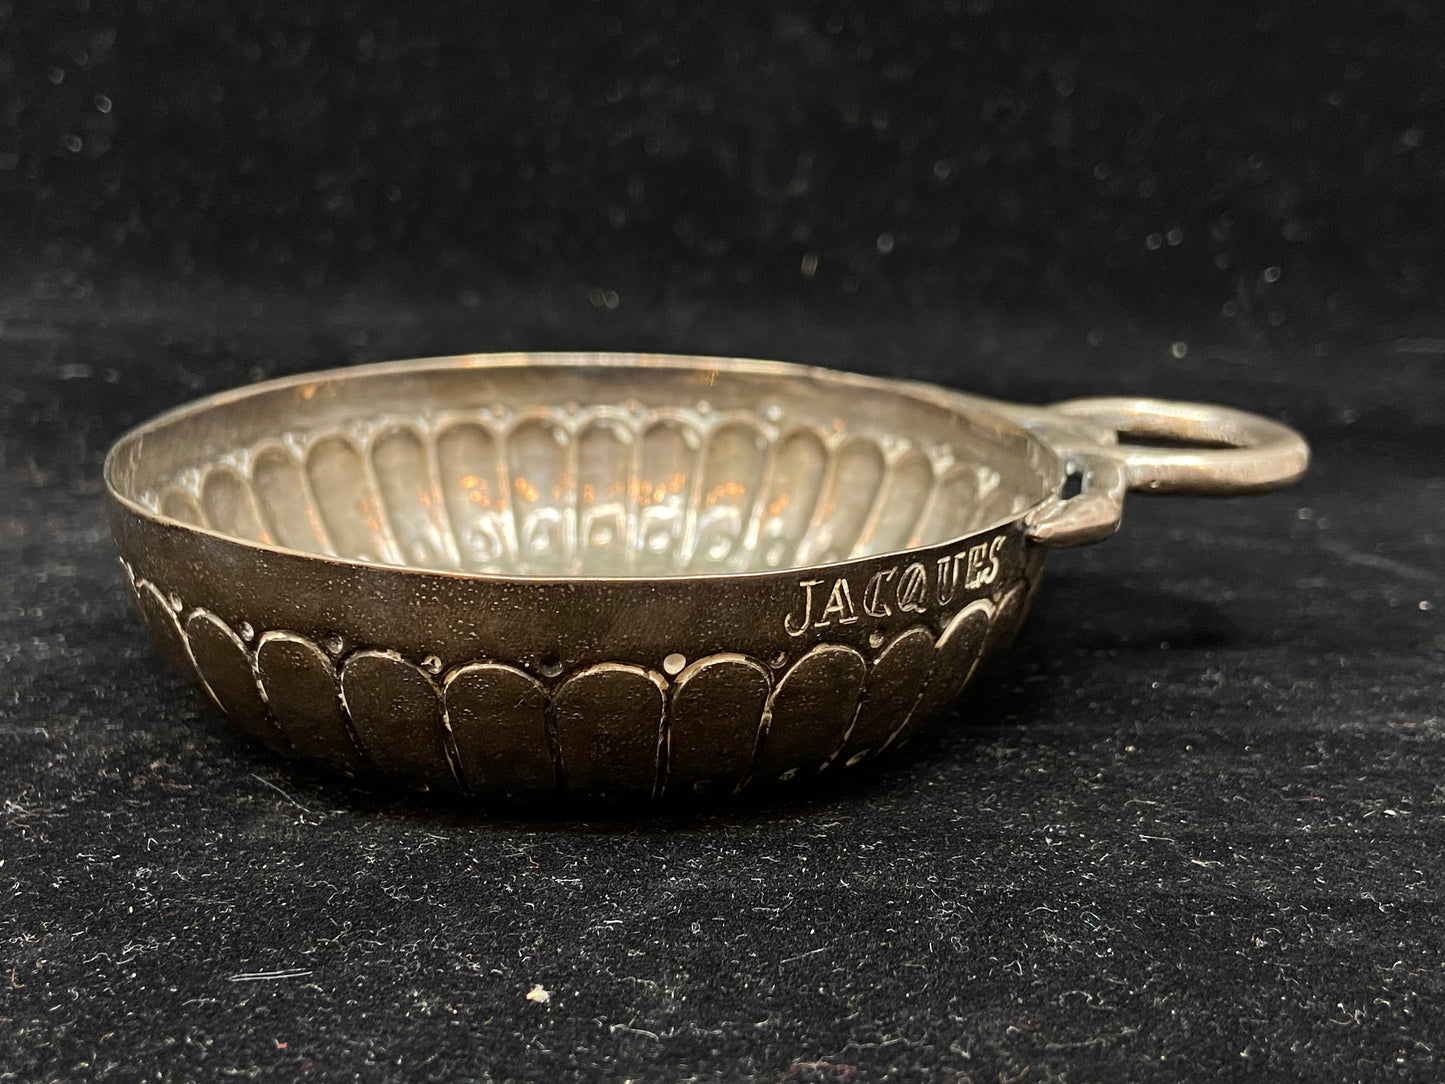 Antique Silver Snake Handle Tastevin CA. 1760-1790 (26738)